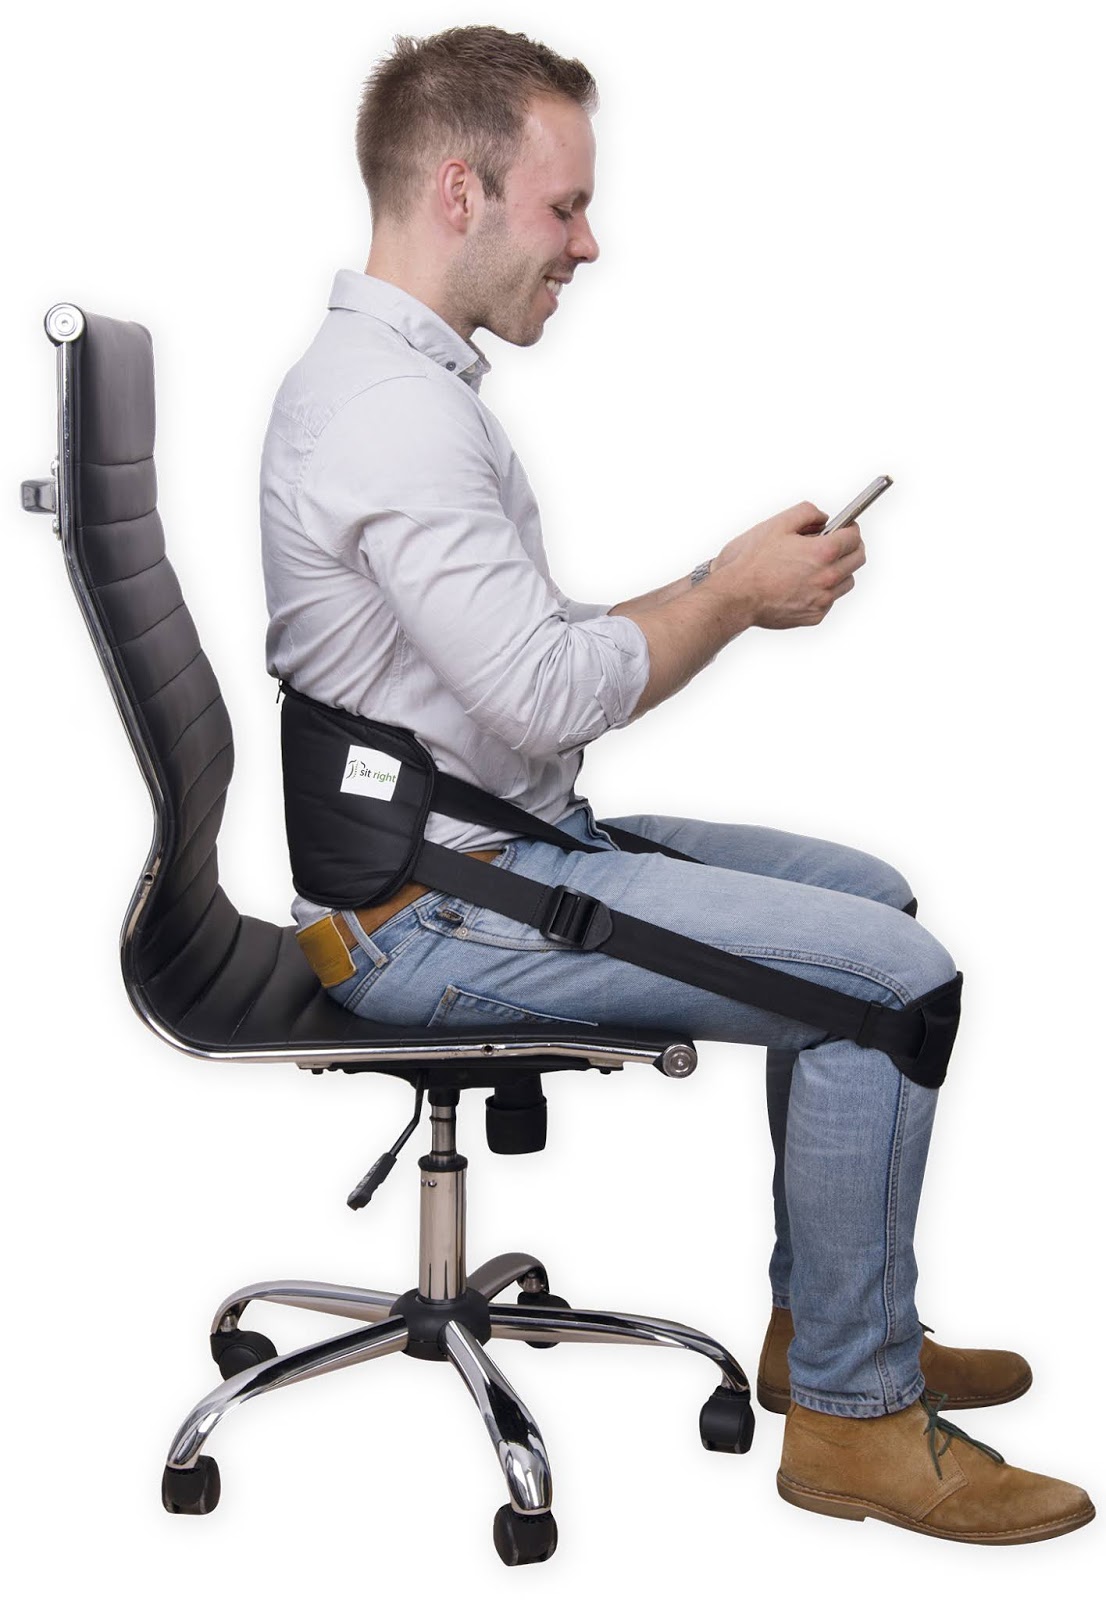 Как правильно сидеть на кресле